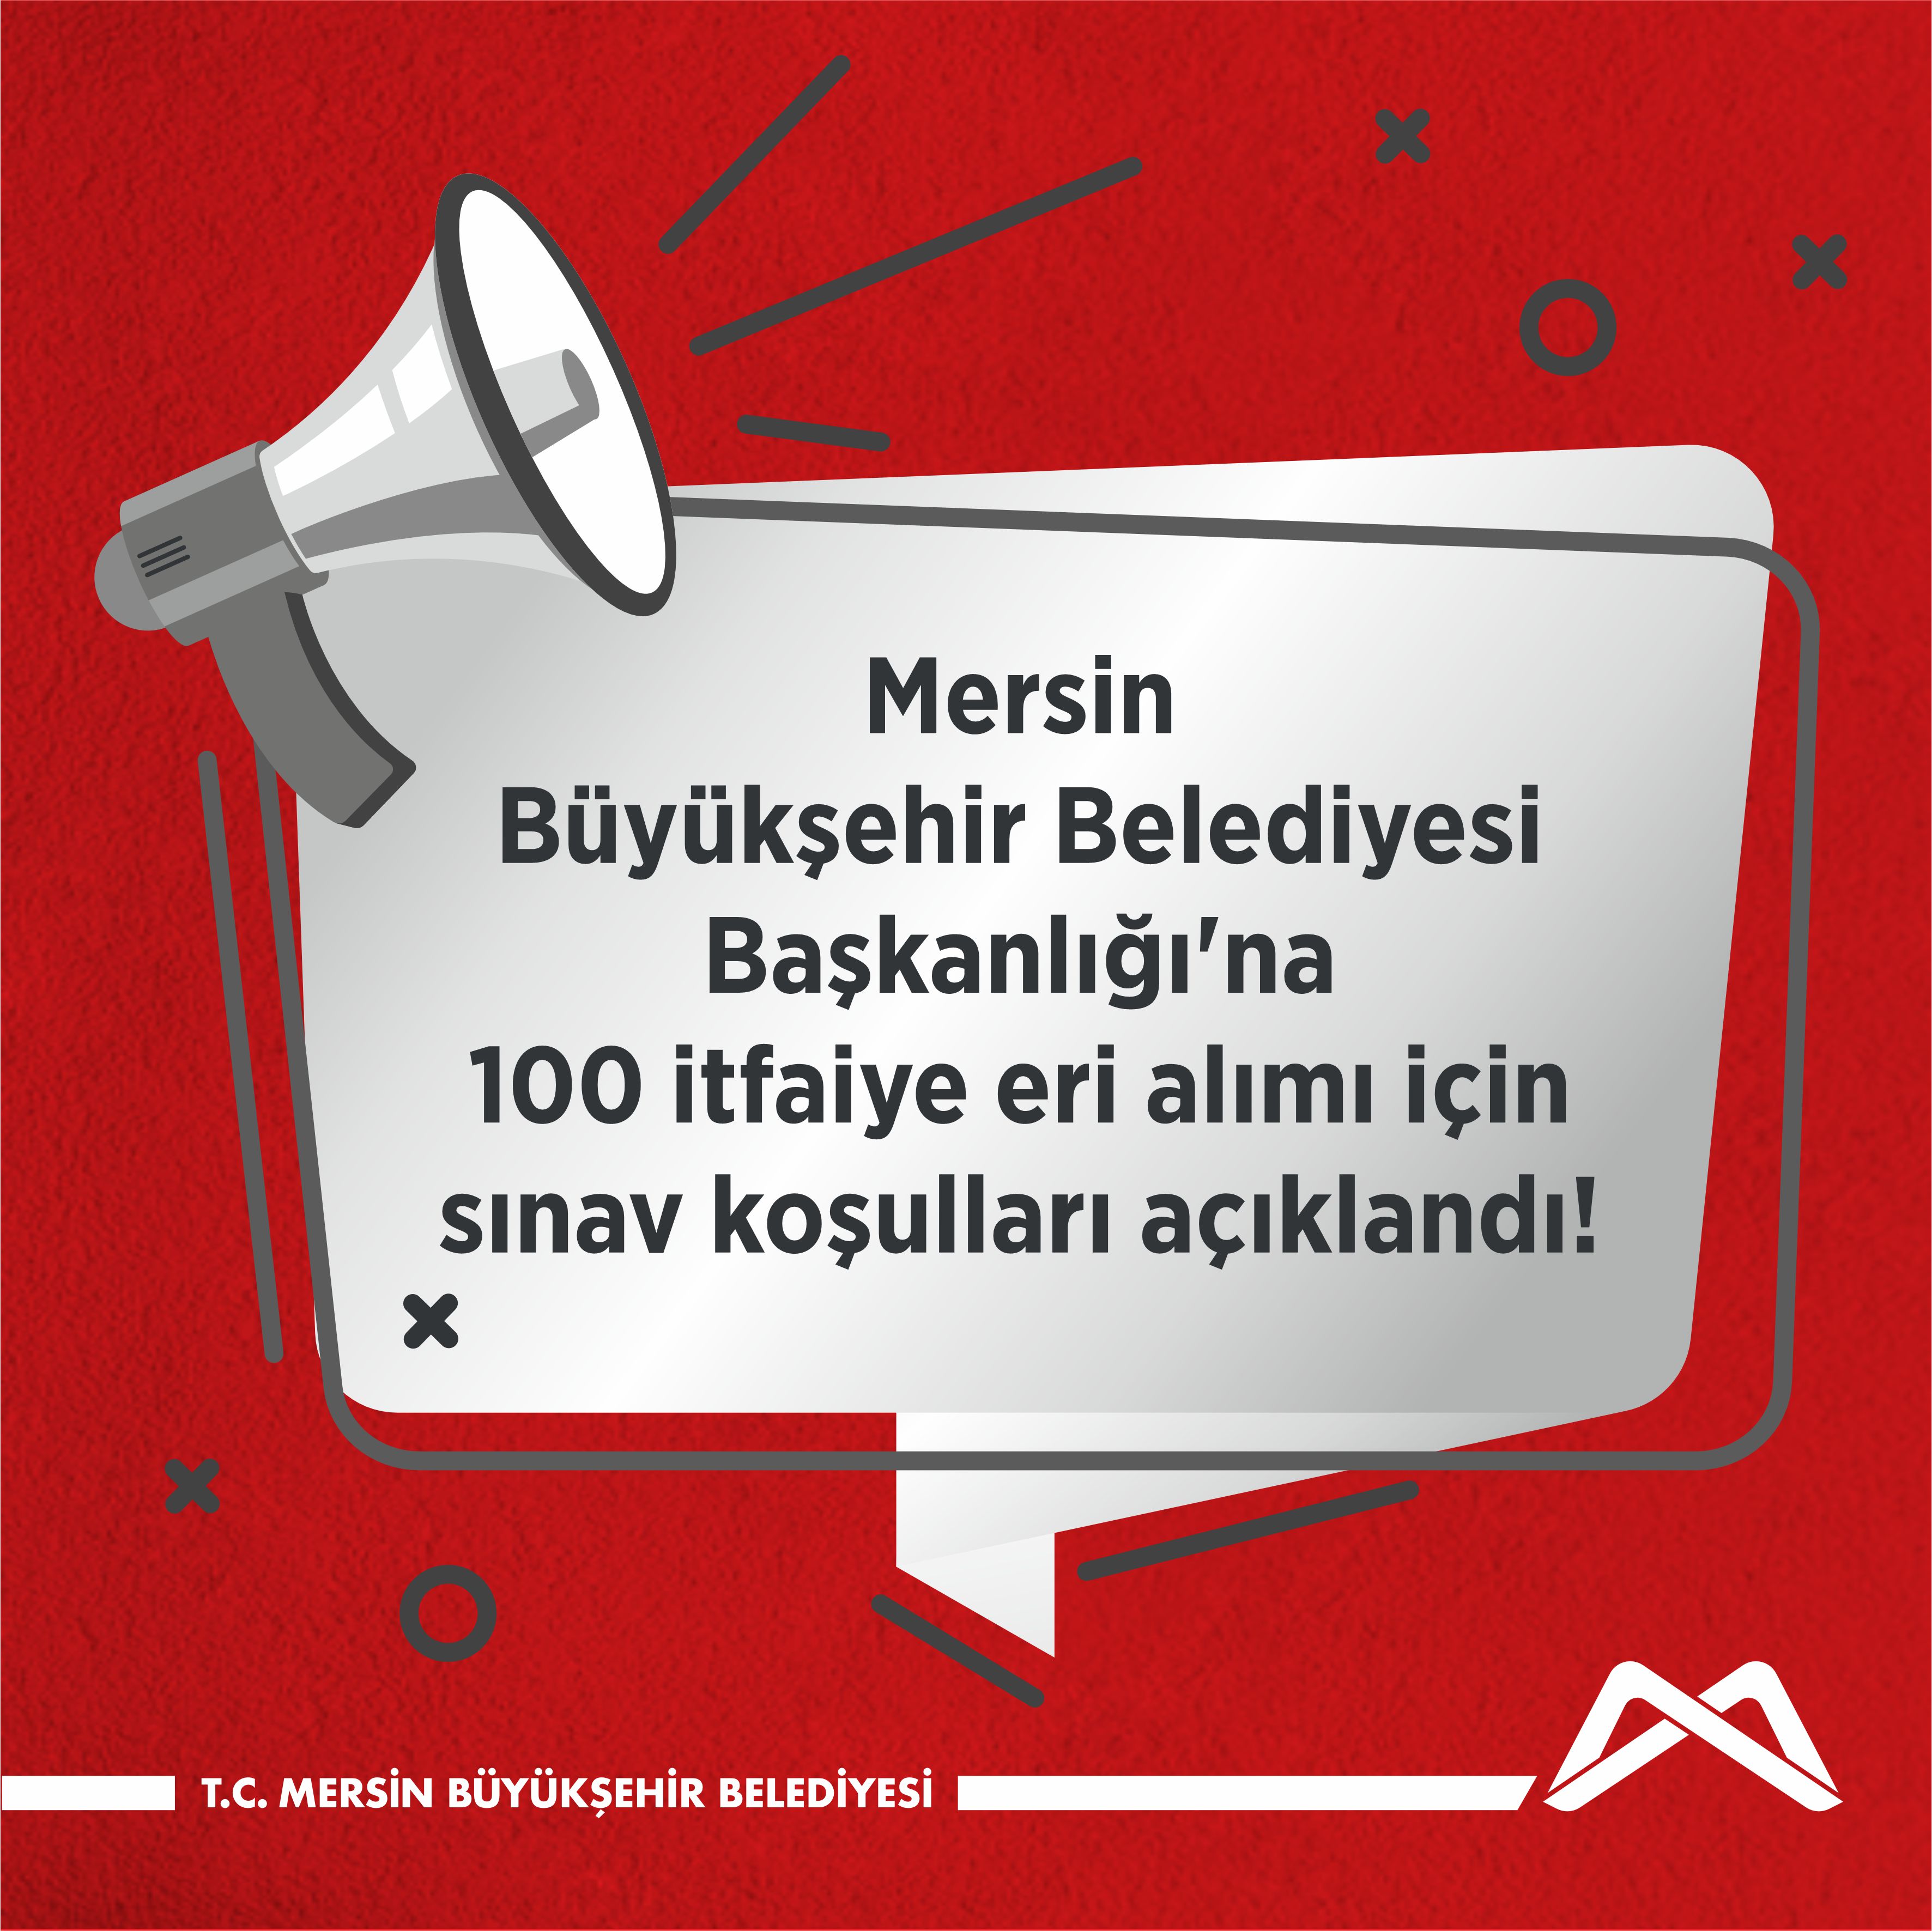 Mersin Büyükşehir Belediyesi Başkanlığı'na bağlı itfaiye eri alımı için sınav koşulları açıklandı!